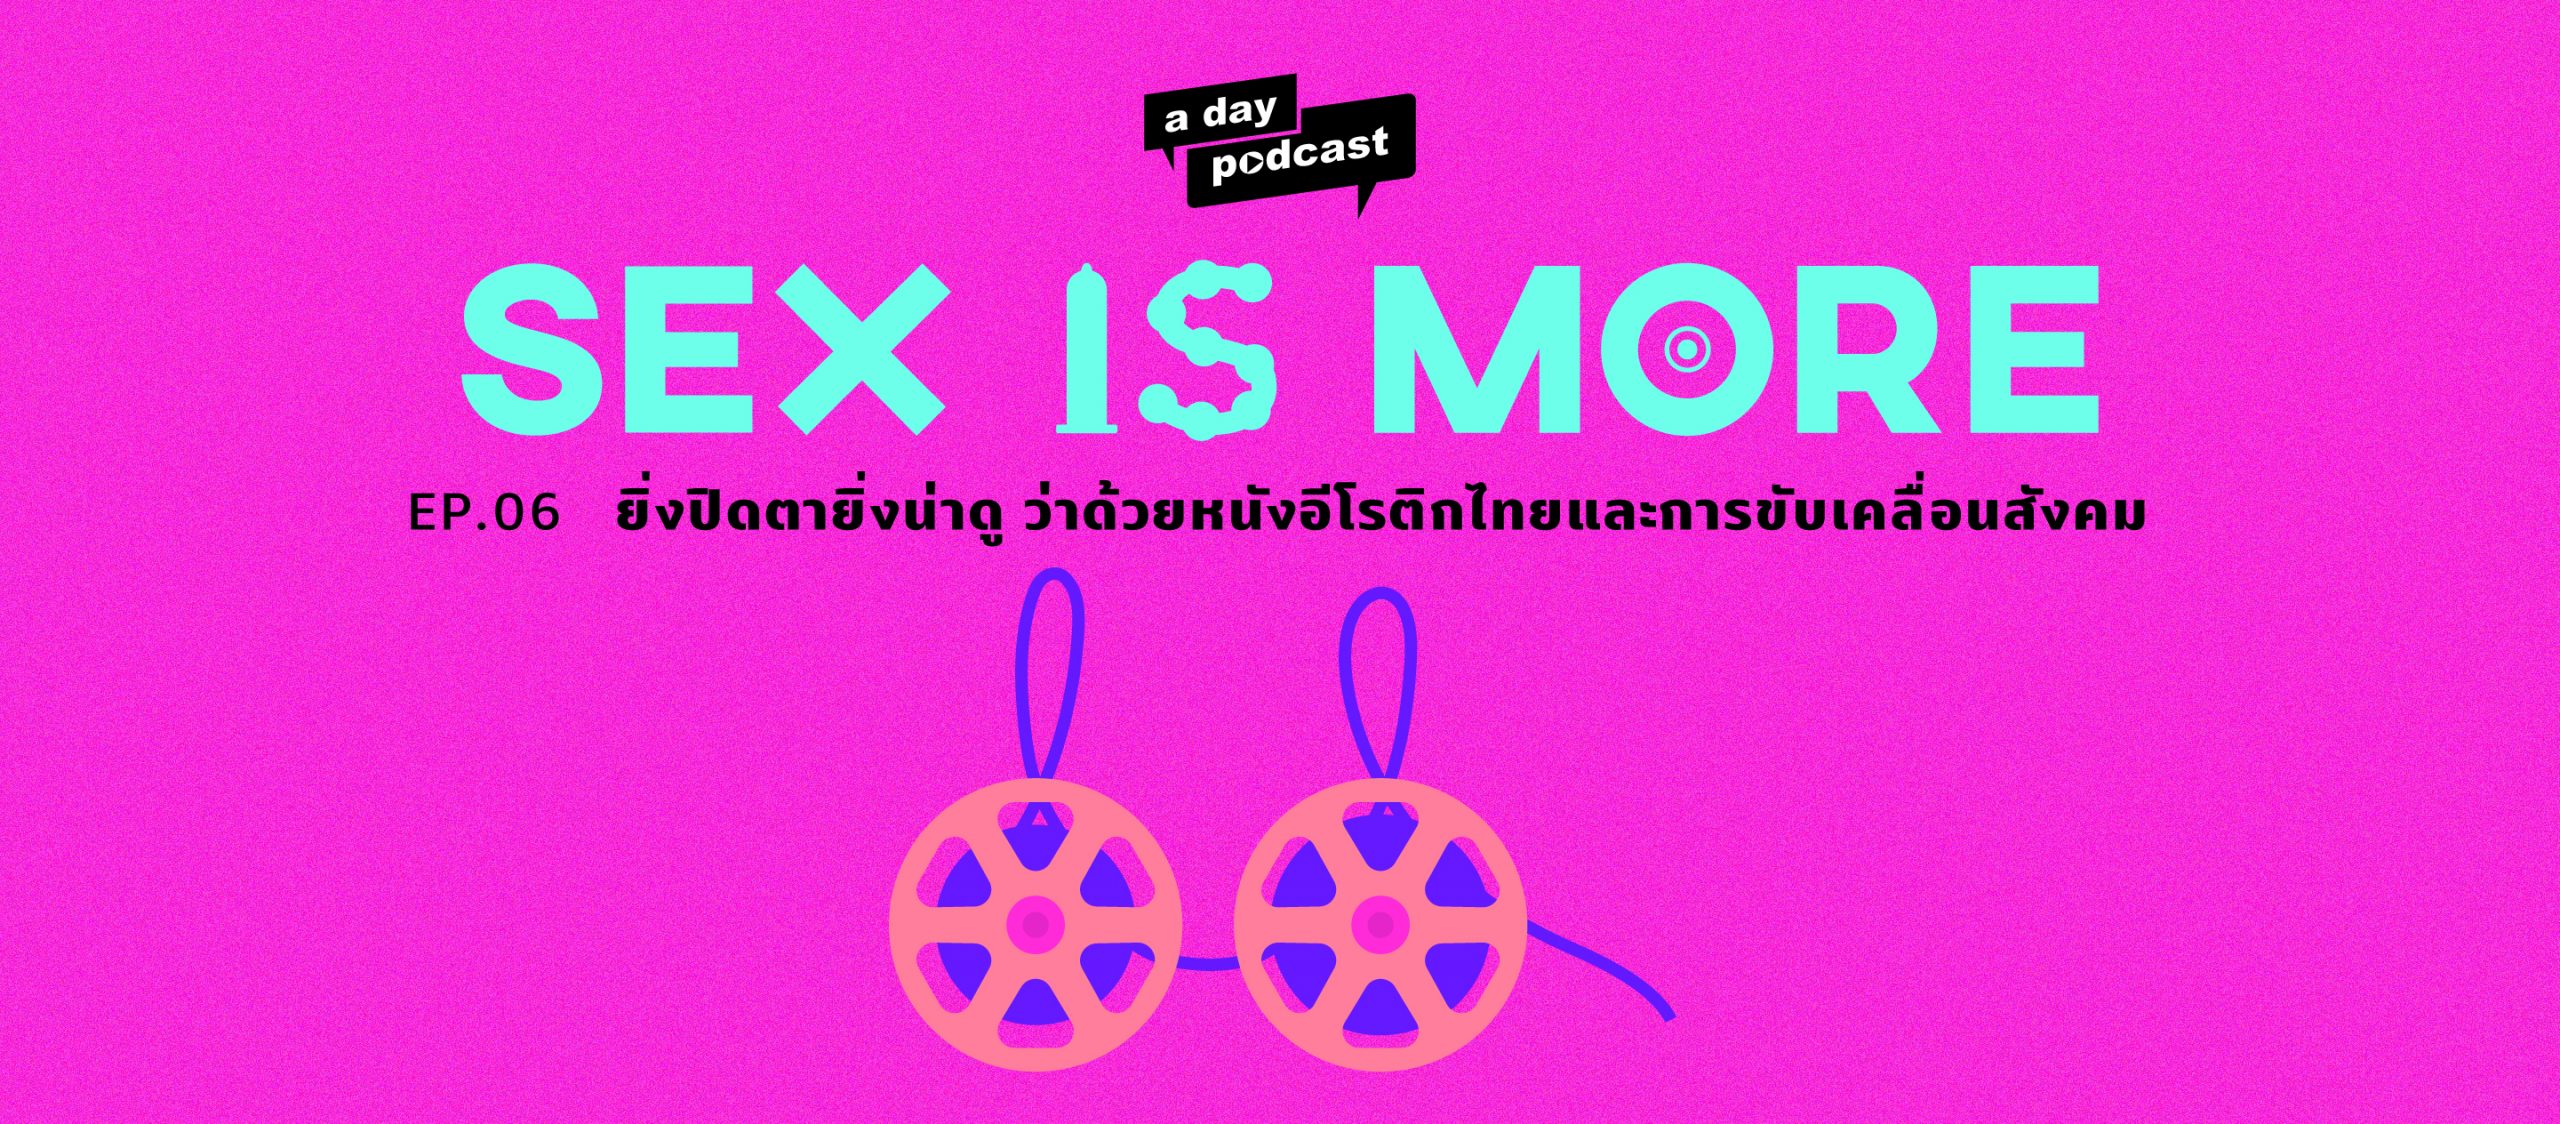 Sex is More EP.06 ยิ่งปิดตายิ่งน่าดู ว่าด้วยหนังอีโรติกไทยและการขับเคลื่อนสังคม